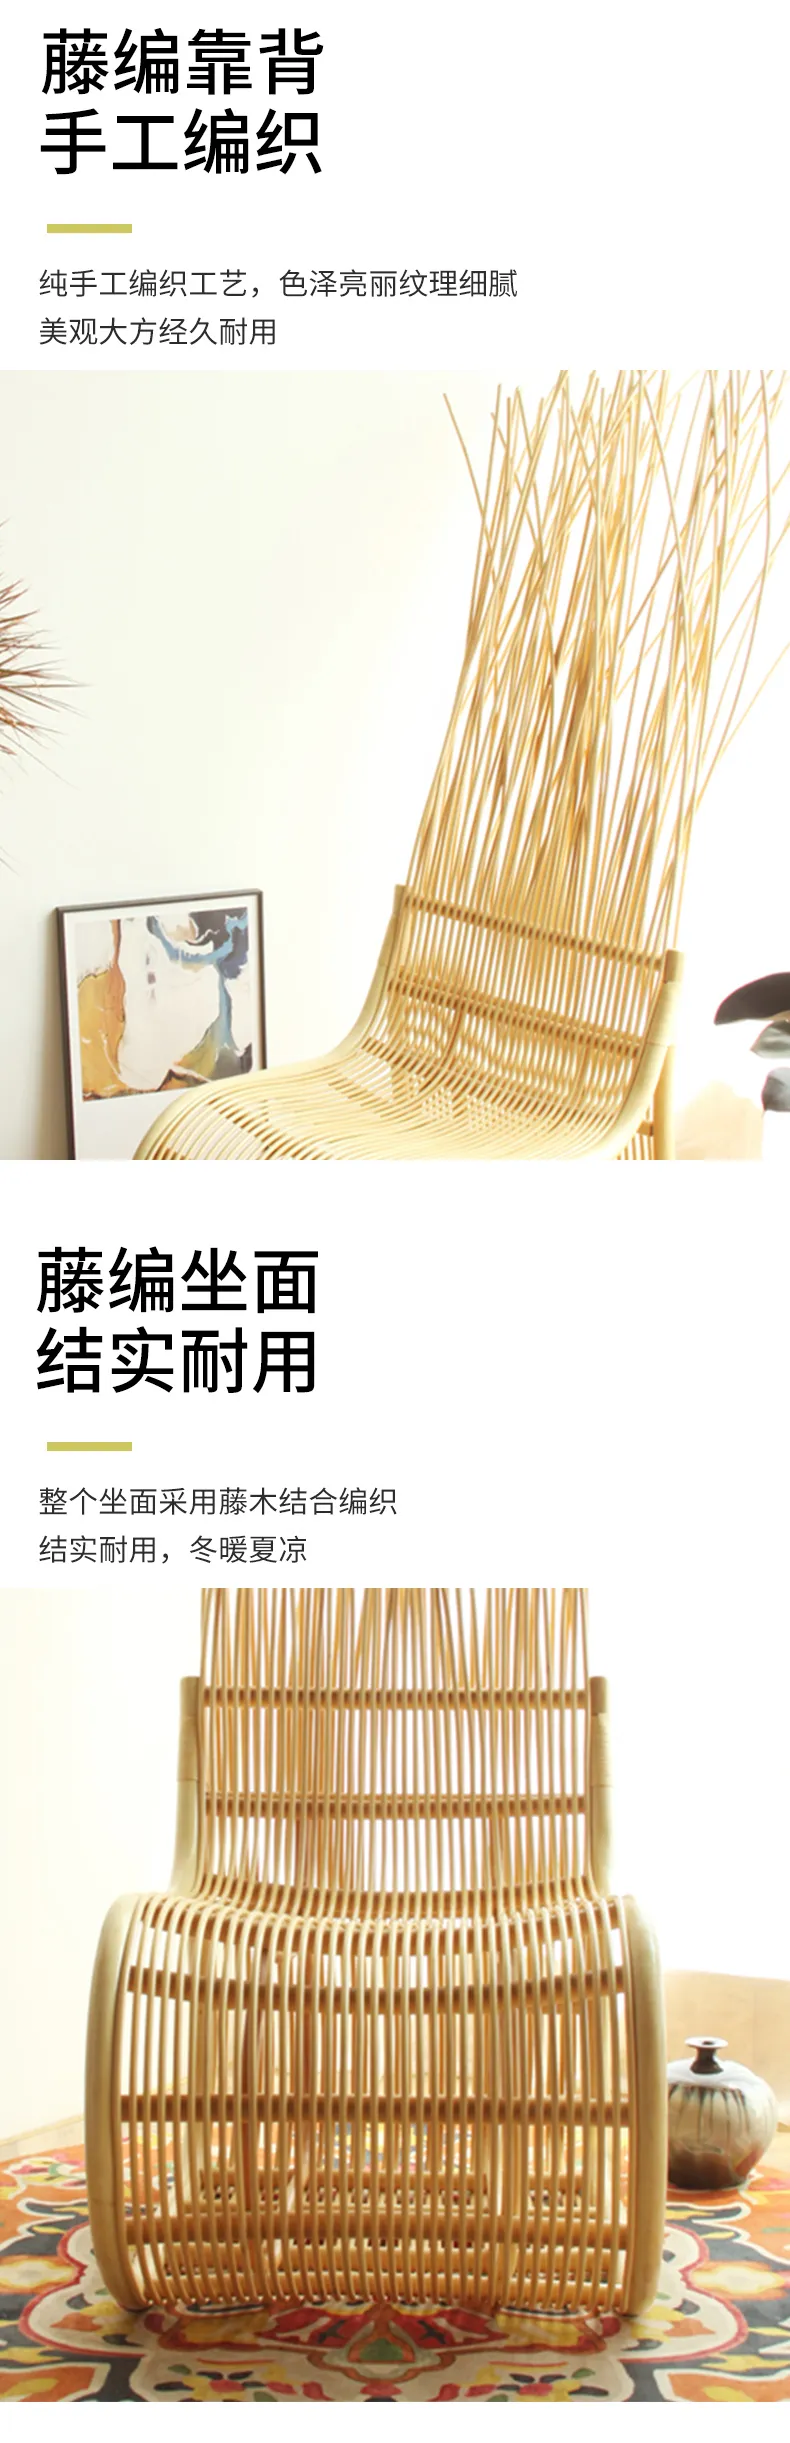 华松居 藤椅家具印尼进口玛瑙藤纯手工编织阳台藤椅家具#上上无形(图5)